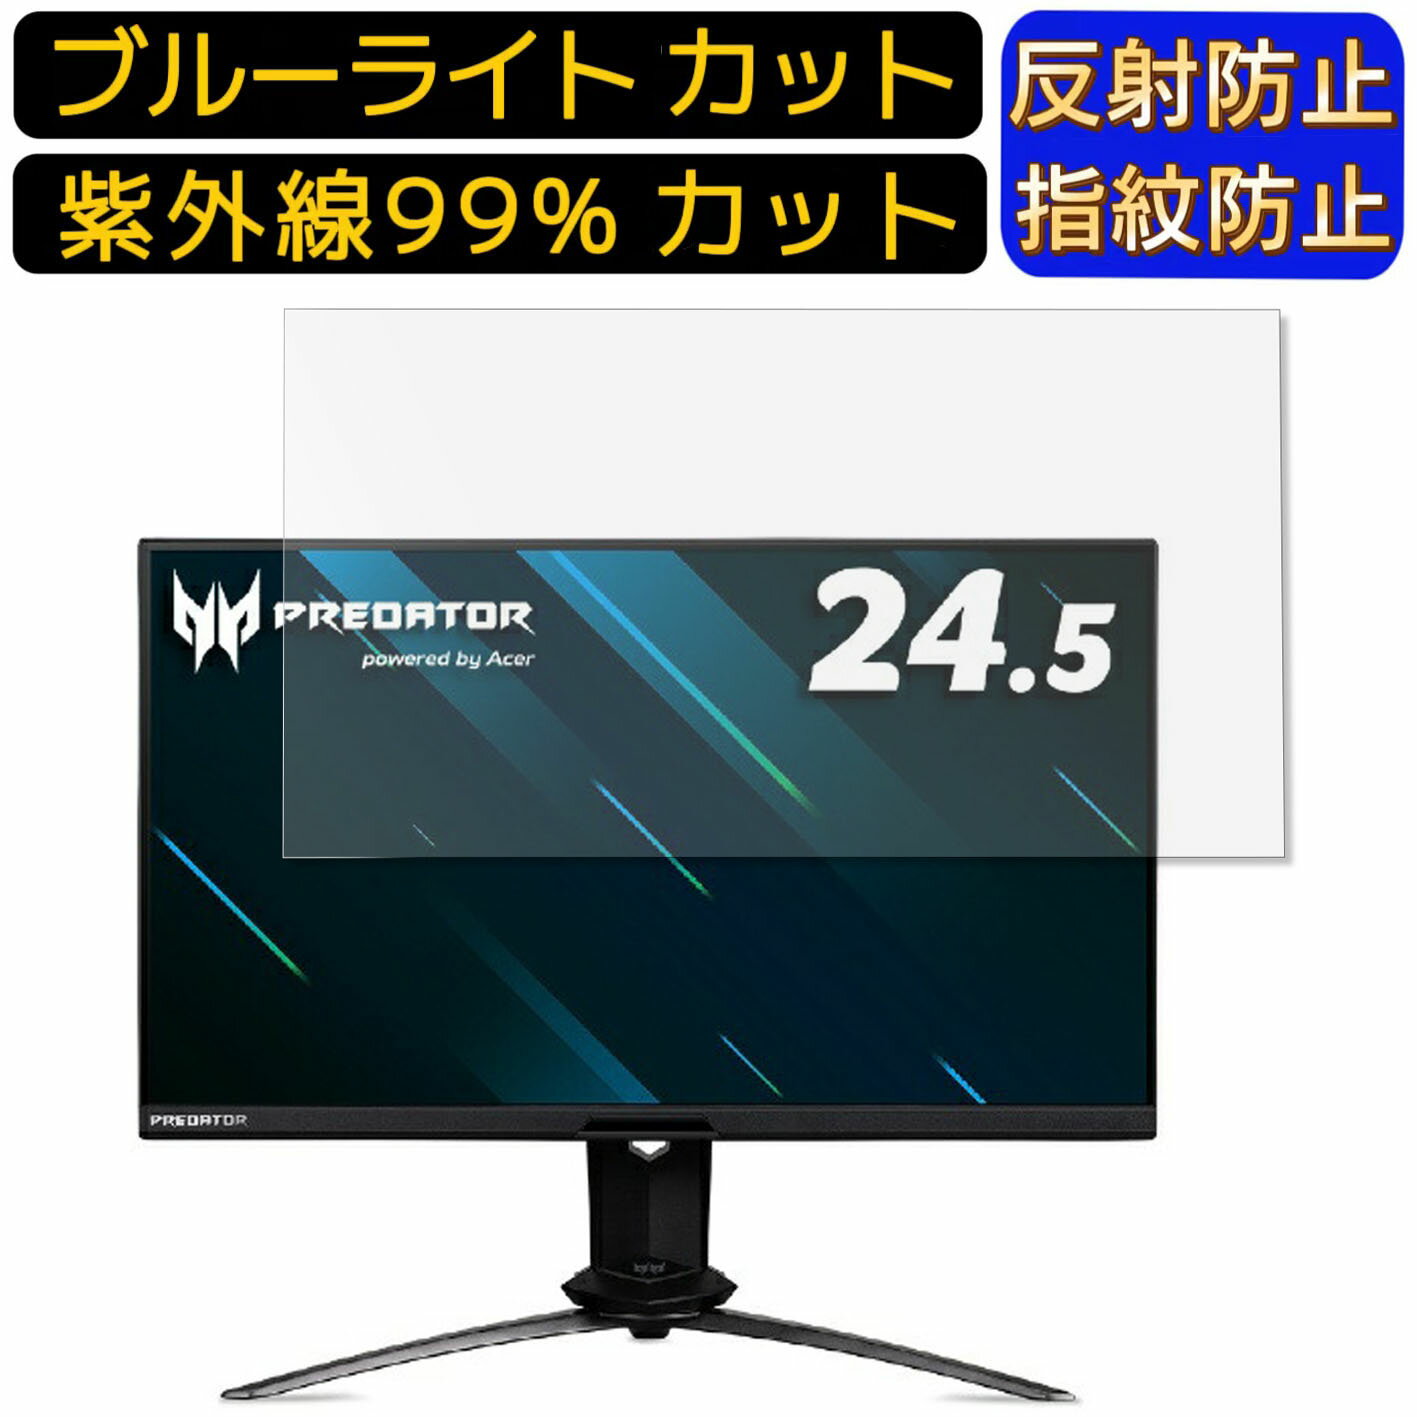 【ポイント2倍】Acer X25bmiiprzx (Predator